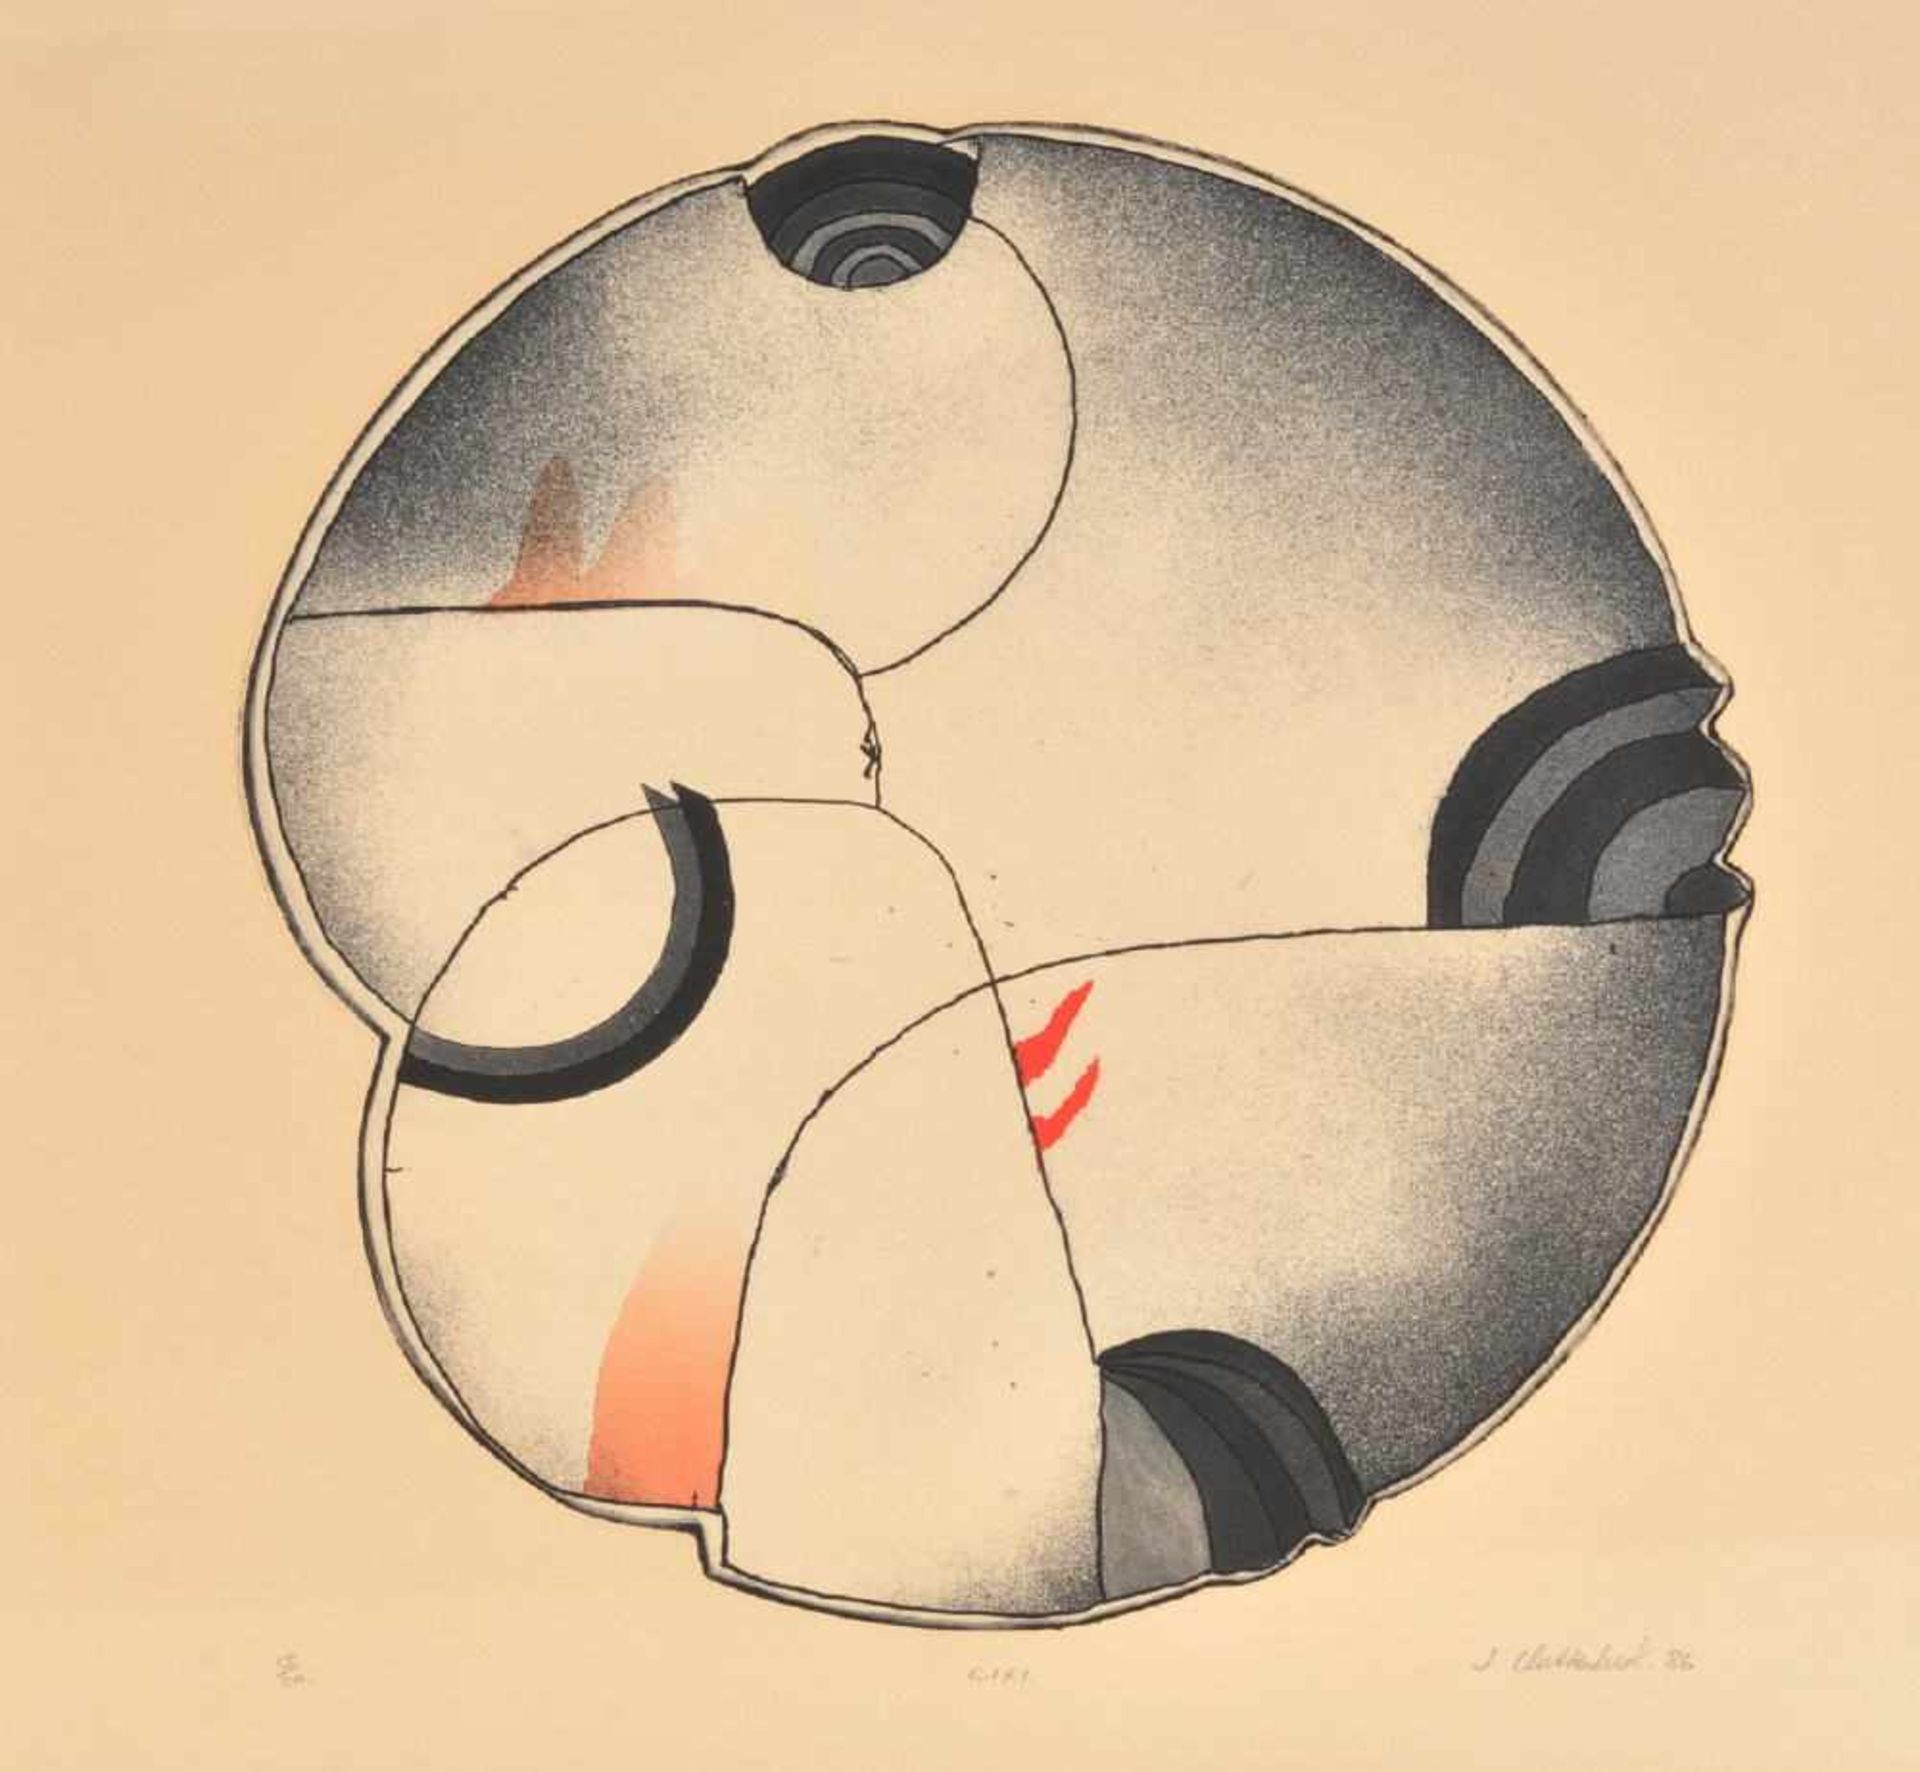 Clutterbuck, Jock, 1945 EdenhopeFarbradierung, 44 x 43 cm, betit. " Cixi ", handsign., dat. (19)